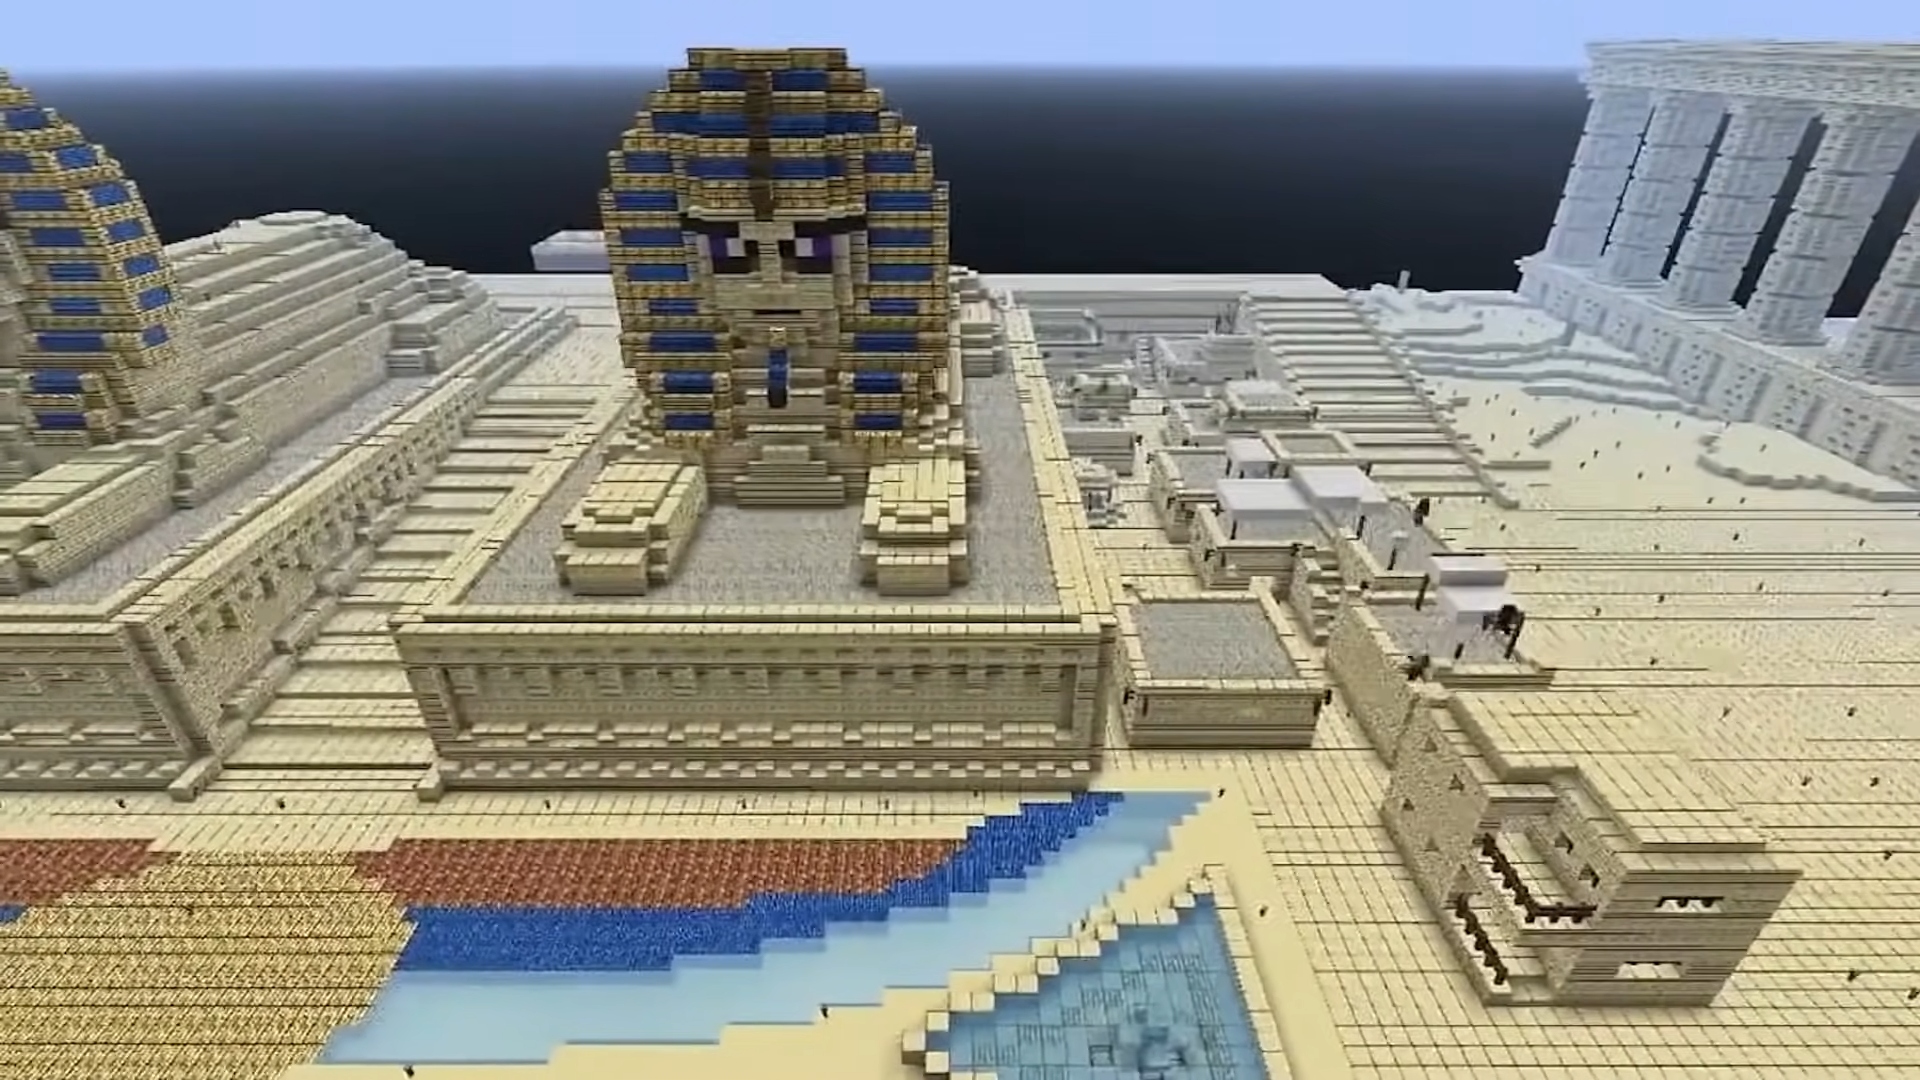 Game pendidikan paling apik: Minecraft. Gambar nuduhake sphinx Mesir digawe ing game